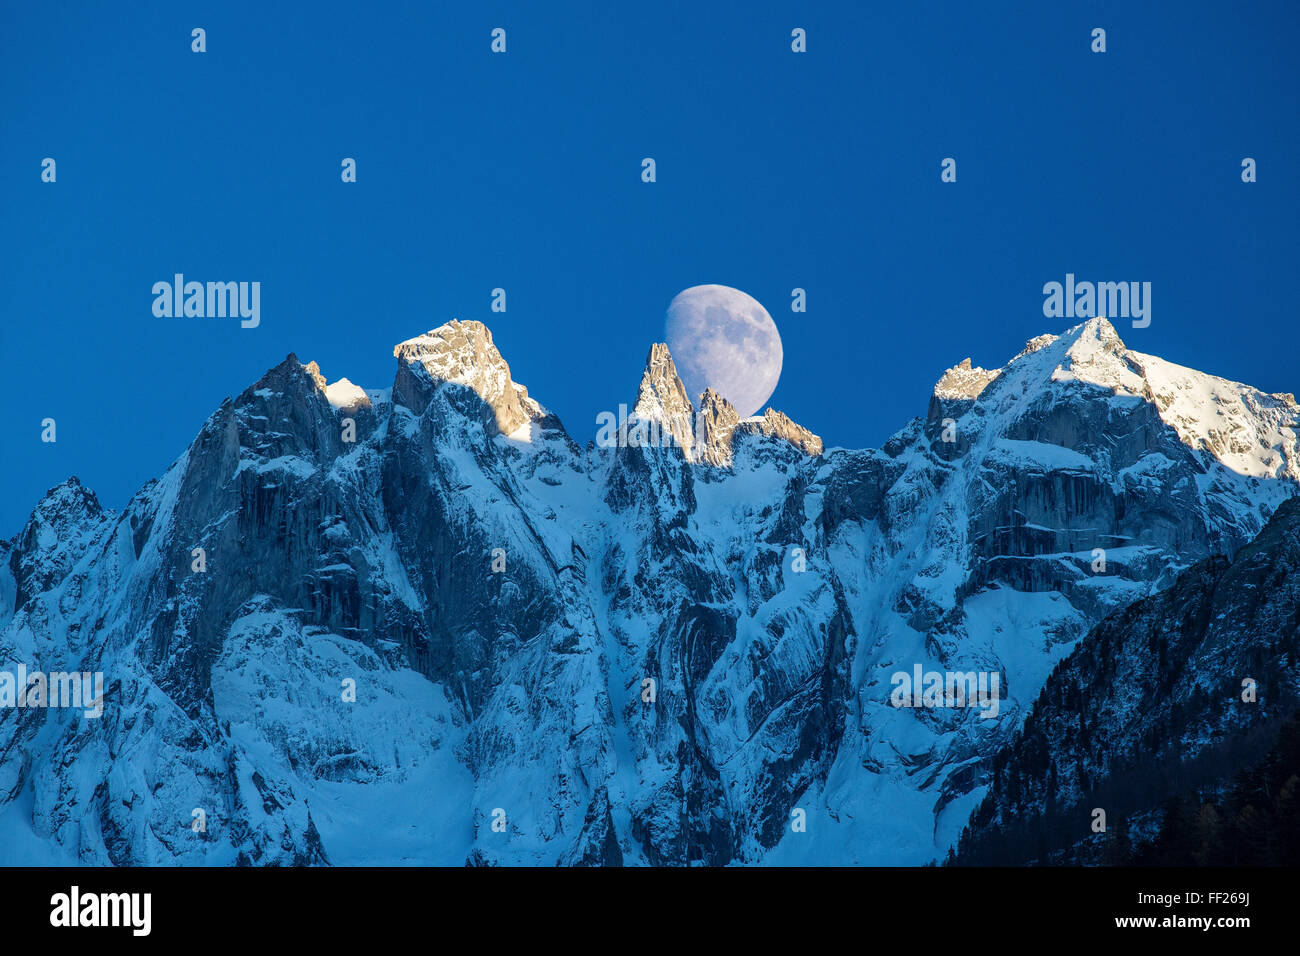 La lune apparaît derrière les montagnes enneigées qui illuminent les sommets au coucher du soleil, la vallée de Bondasca, Swiss Alps, Switzerland, Europe Banque D'Images